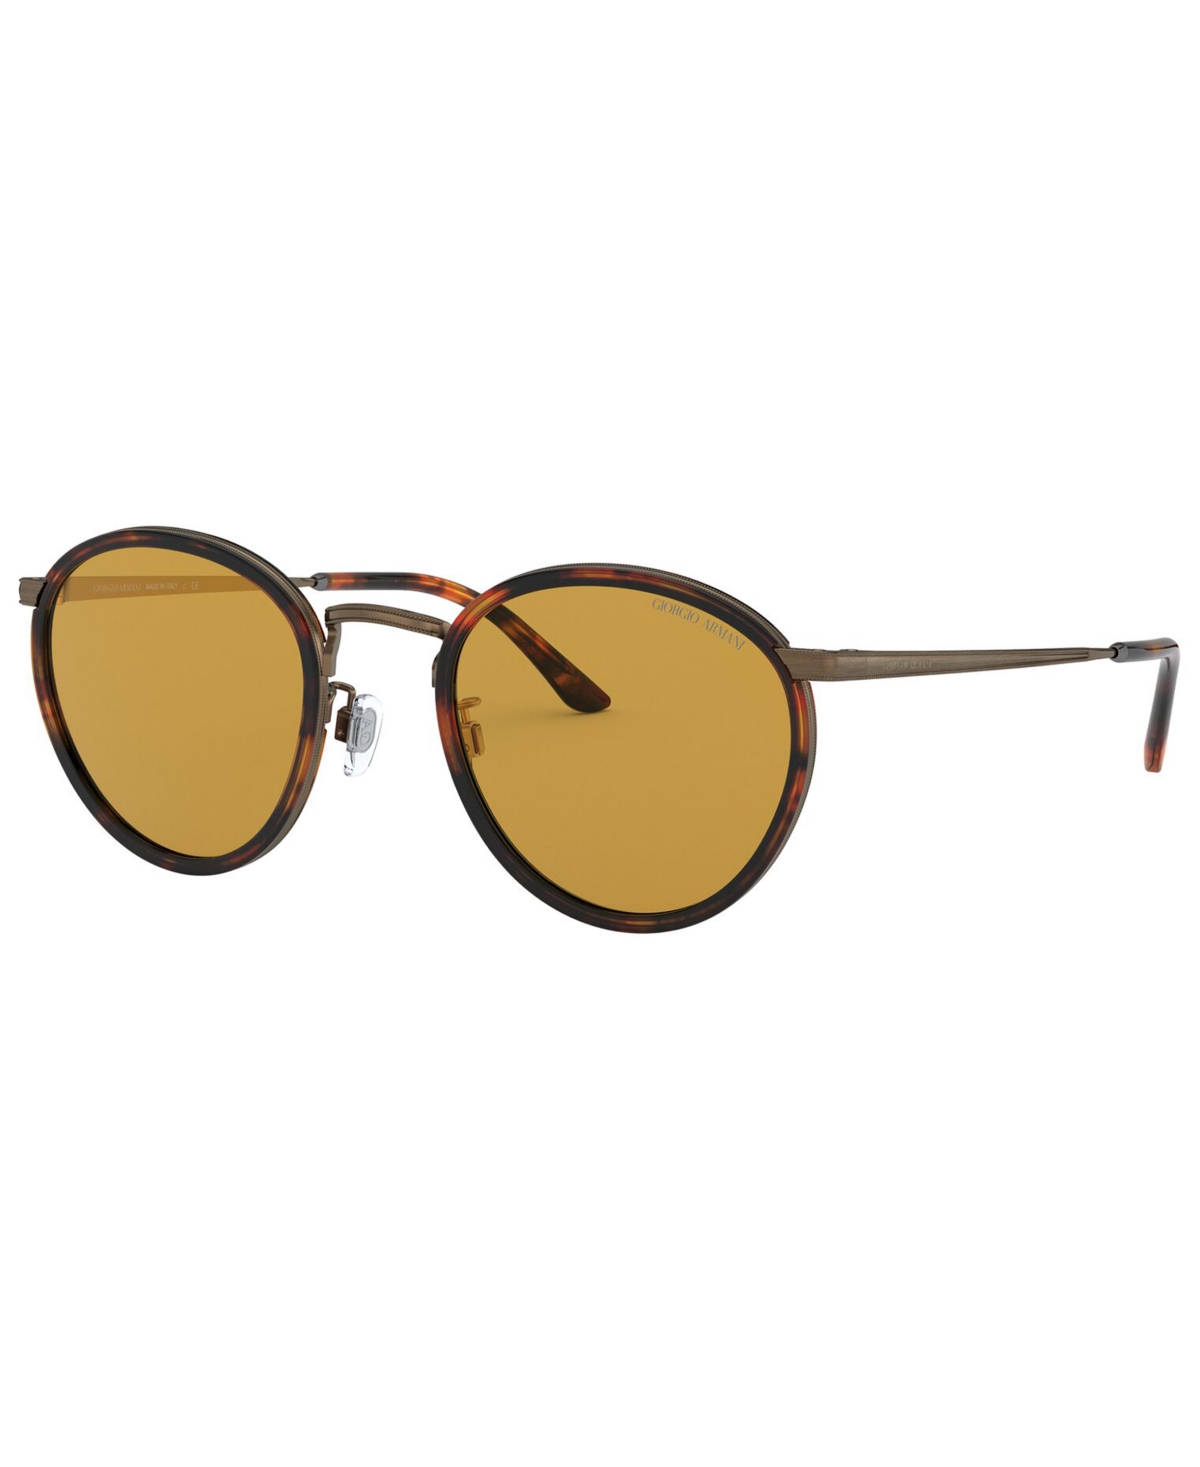 Giorgio Armani Men's Sunglasses In Yellow Havana,light Brown